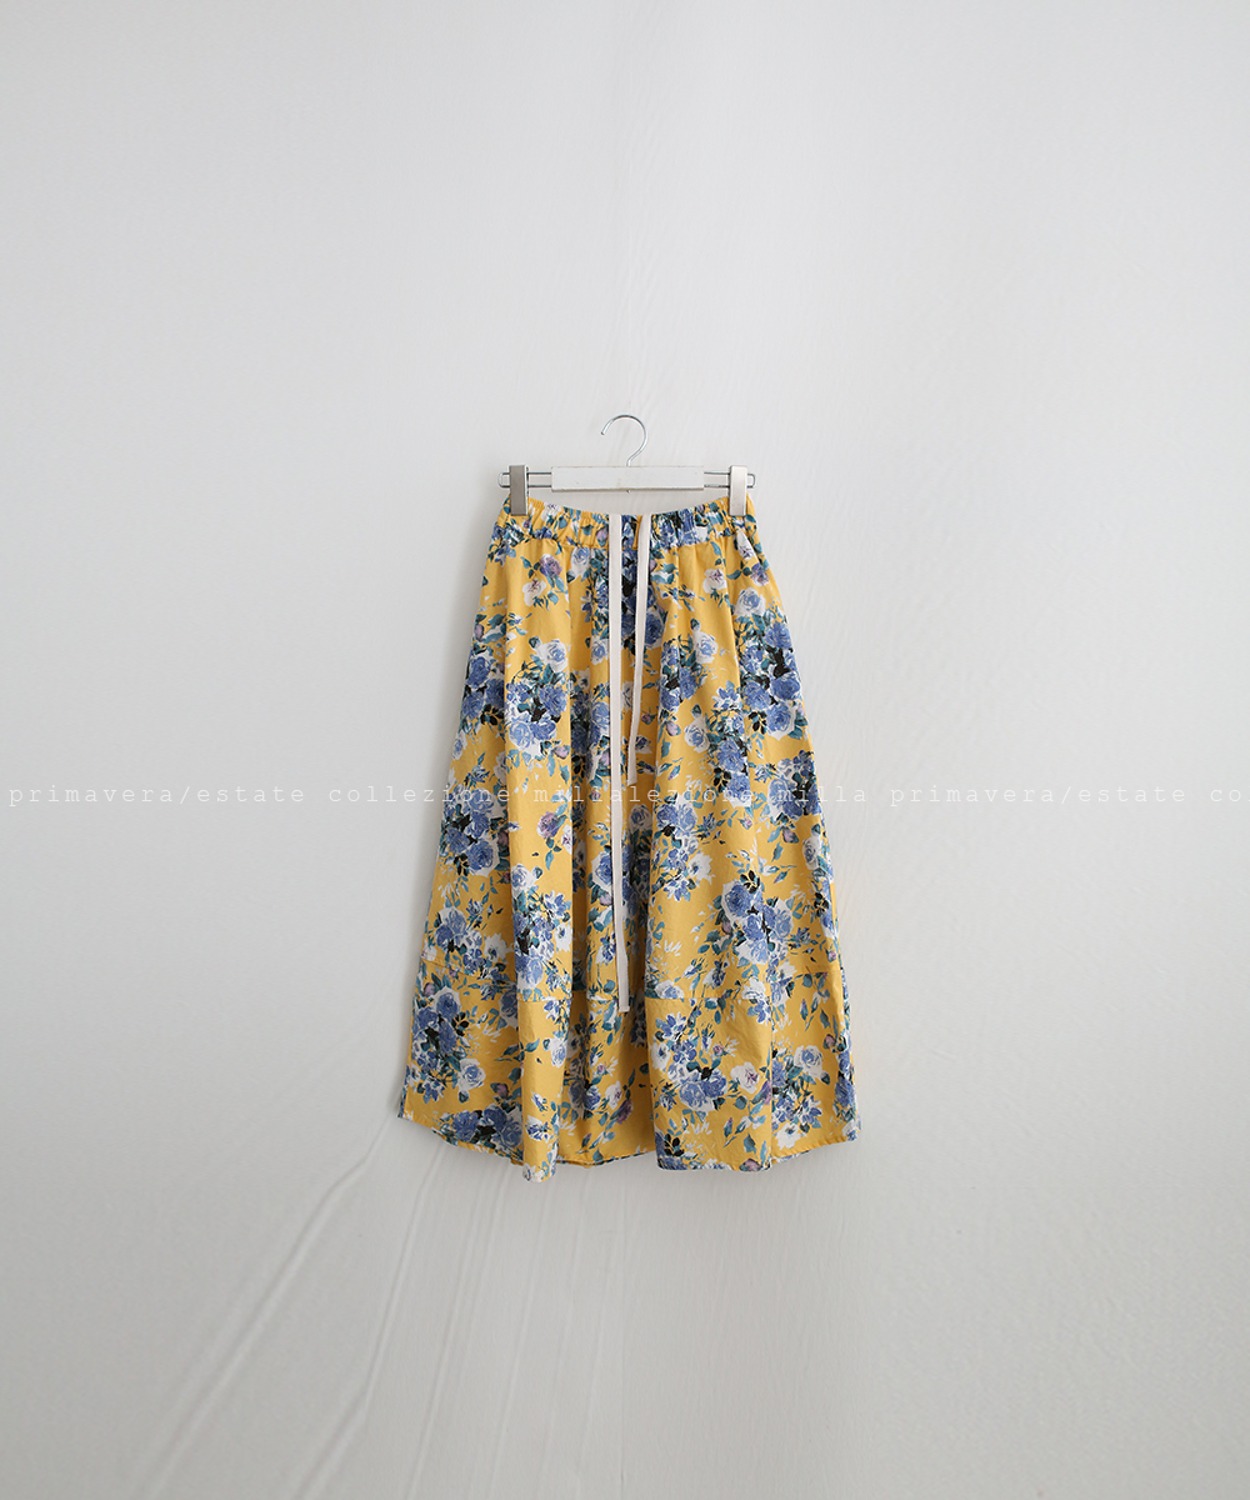 N°044 skirt